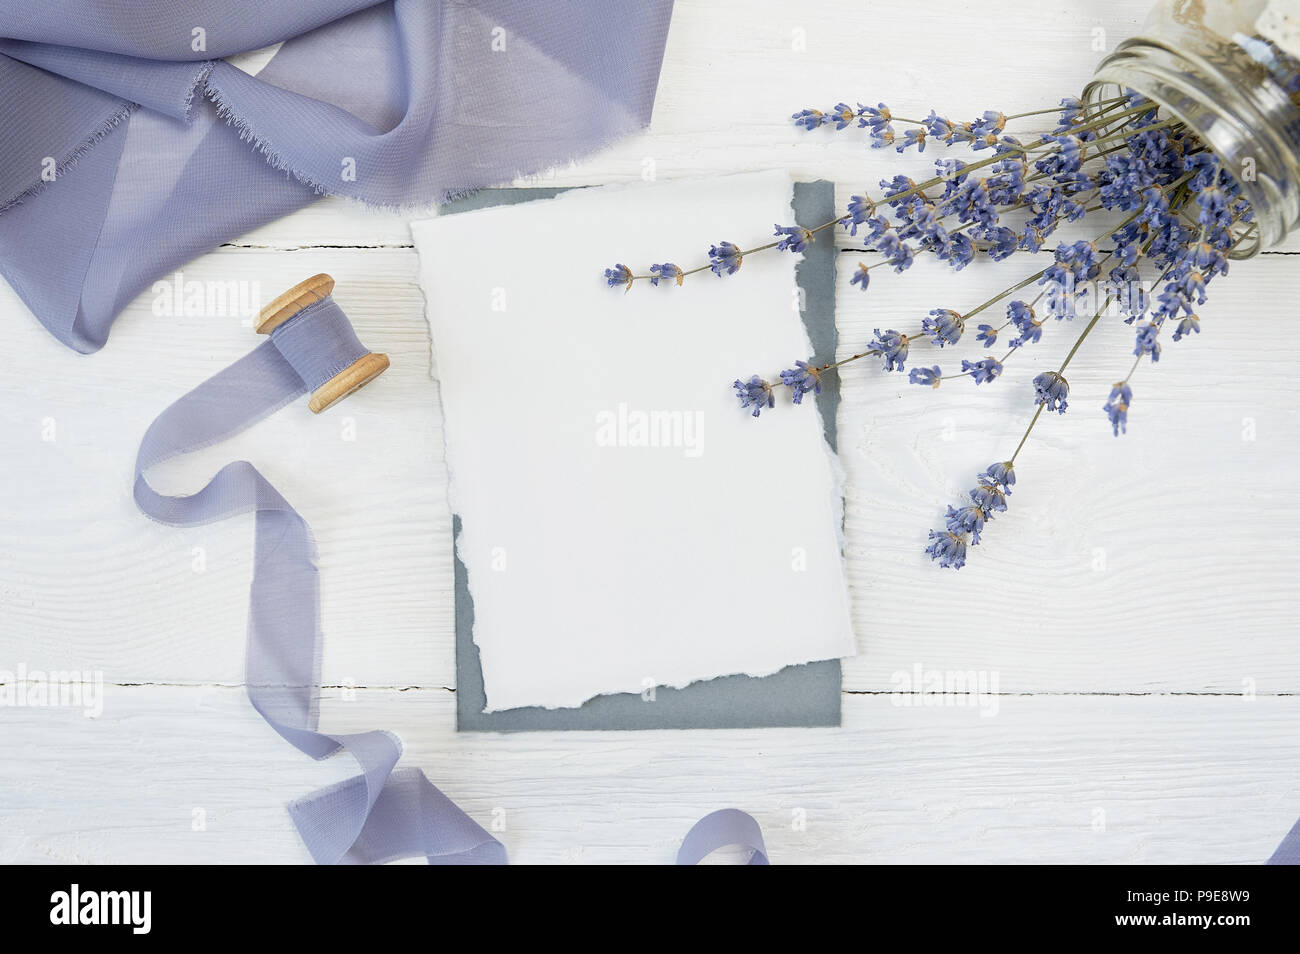 Carte vierge blanc sur fond de fleurs de lavande avec du ruban bleu sur fond blanc. Immersive avec enveloppe et carte vierge. Mise à plat. Vue d'en haut Banque D'Images